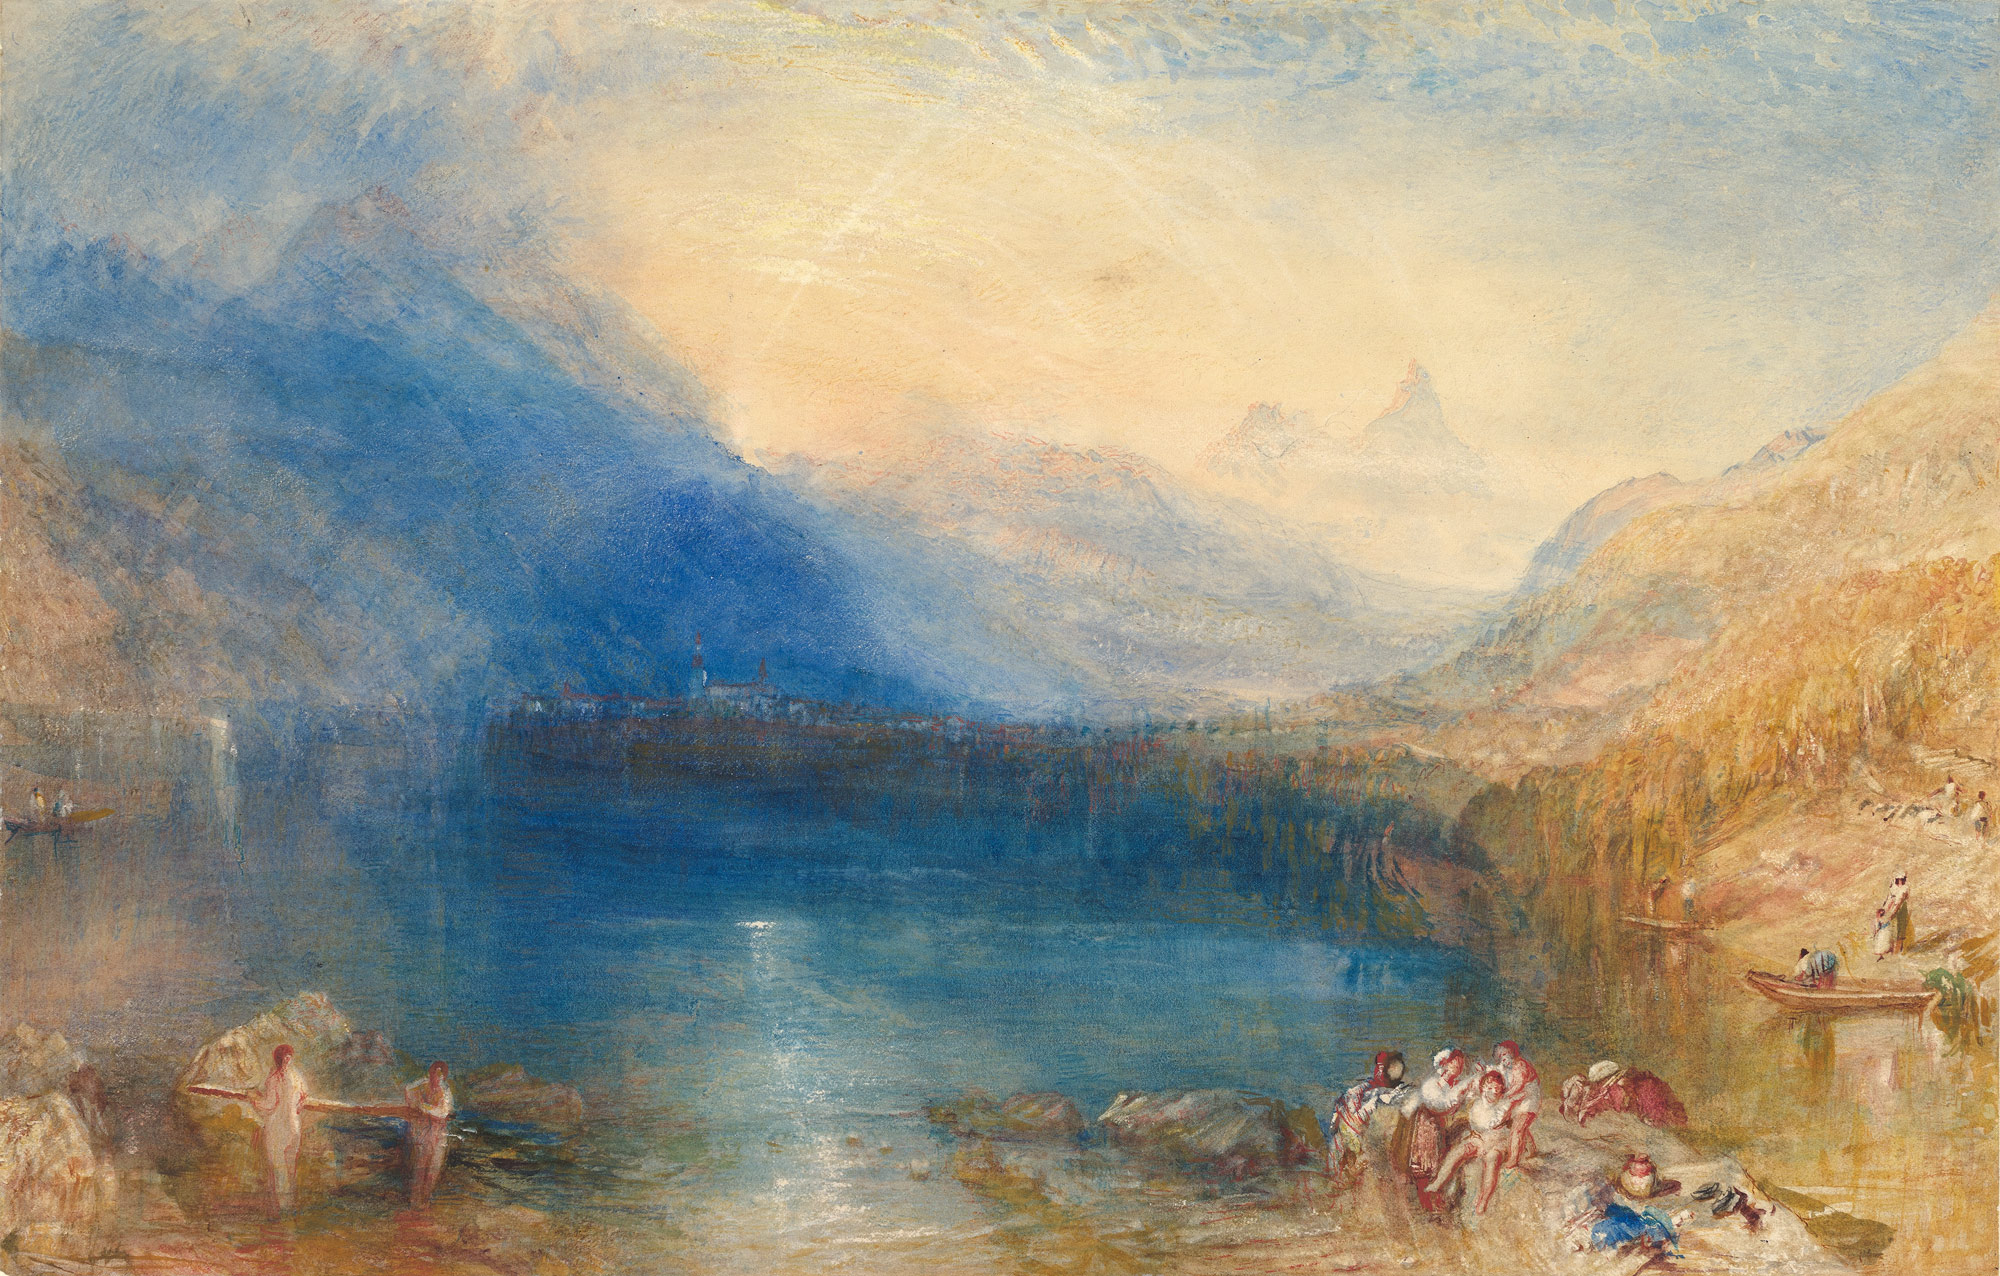 O Lago de Zug by Joseph Mallord William Turner - 1843 